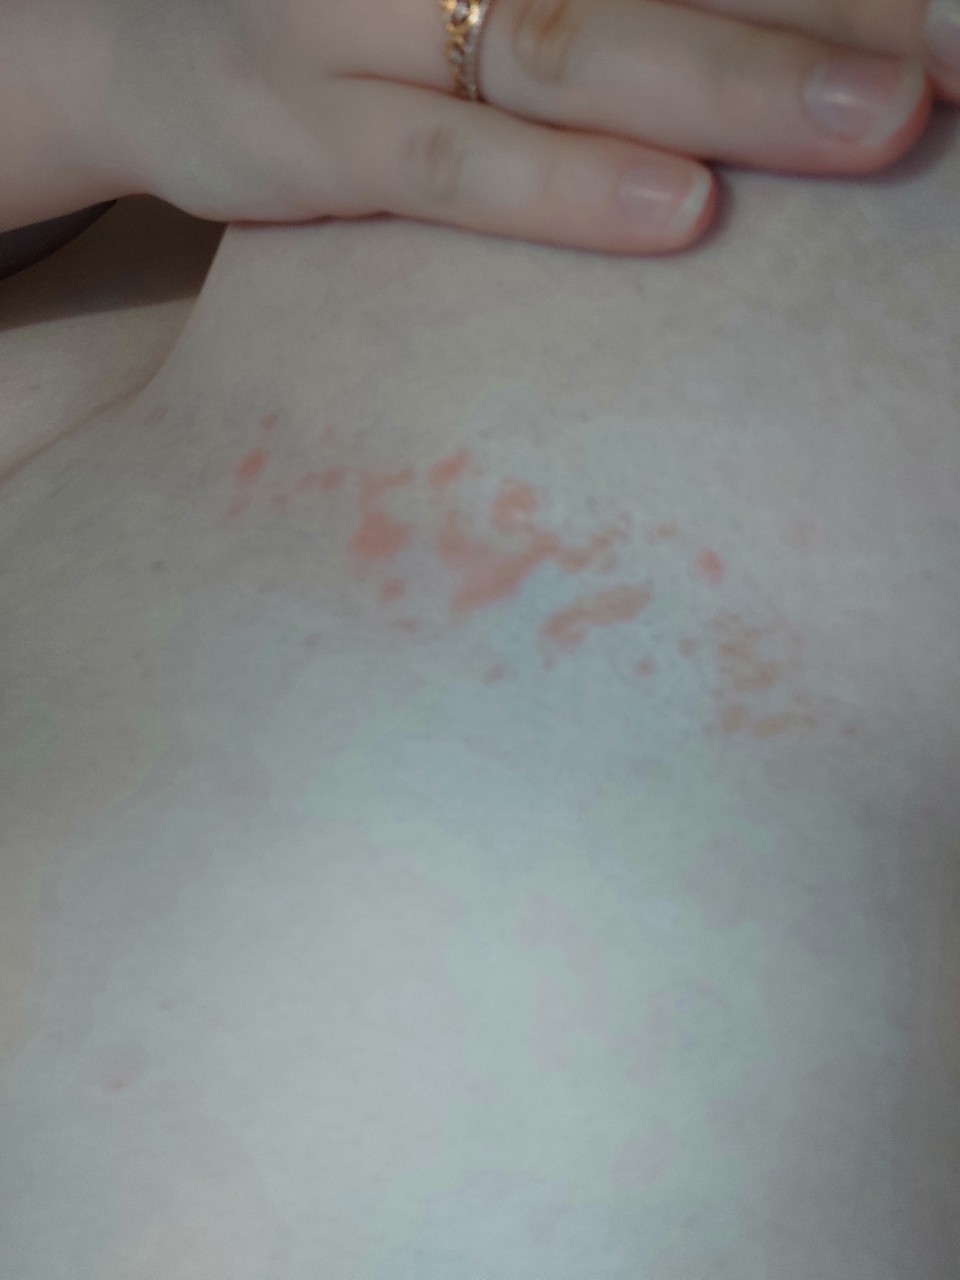 красные точки на груди при беременности фото 105